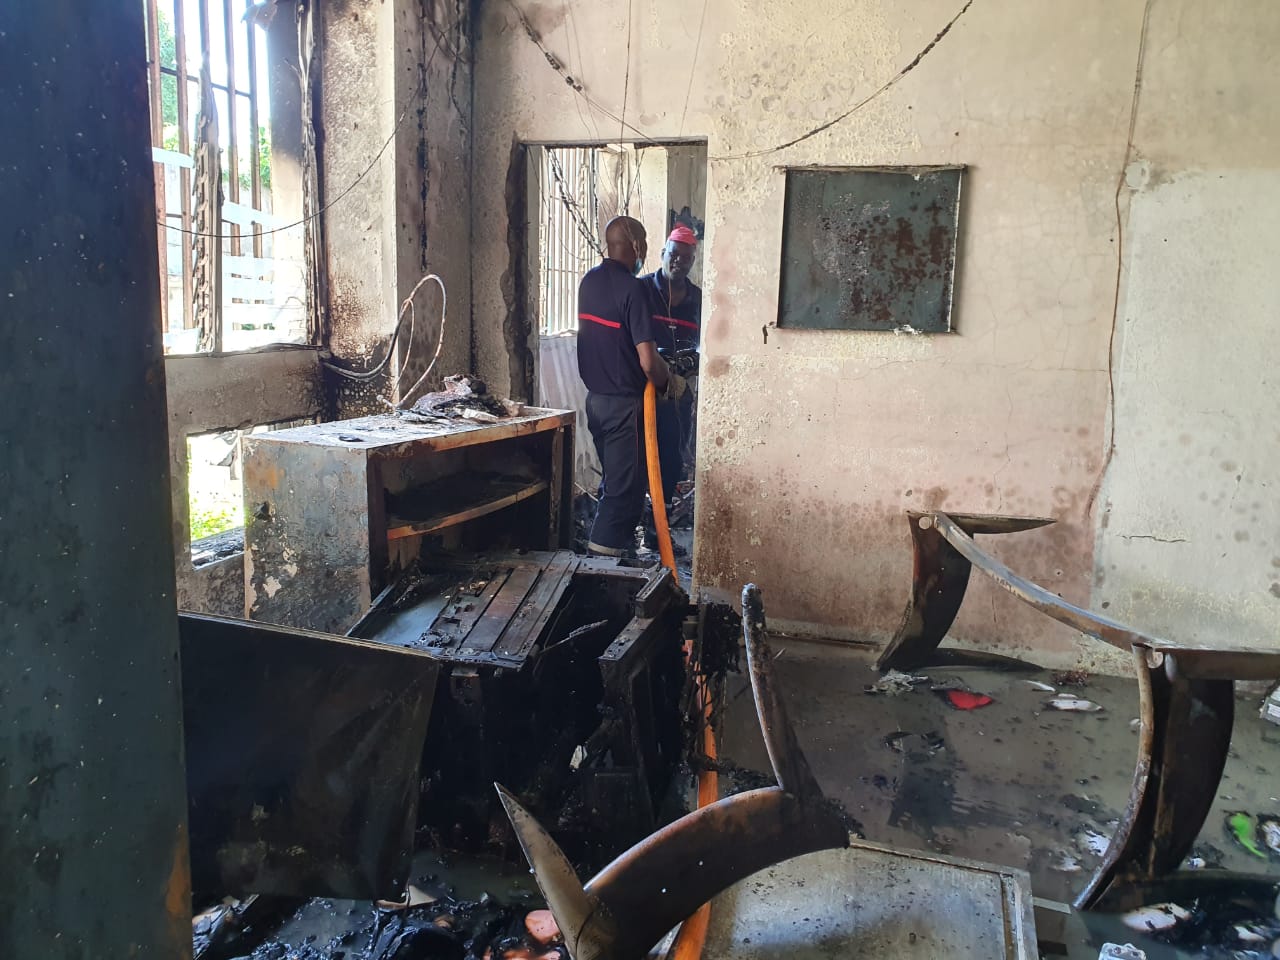     Un incendie a ravagé des locaux administratifs du lycée professionnel de Blanchet

